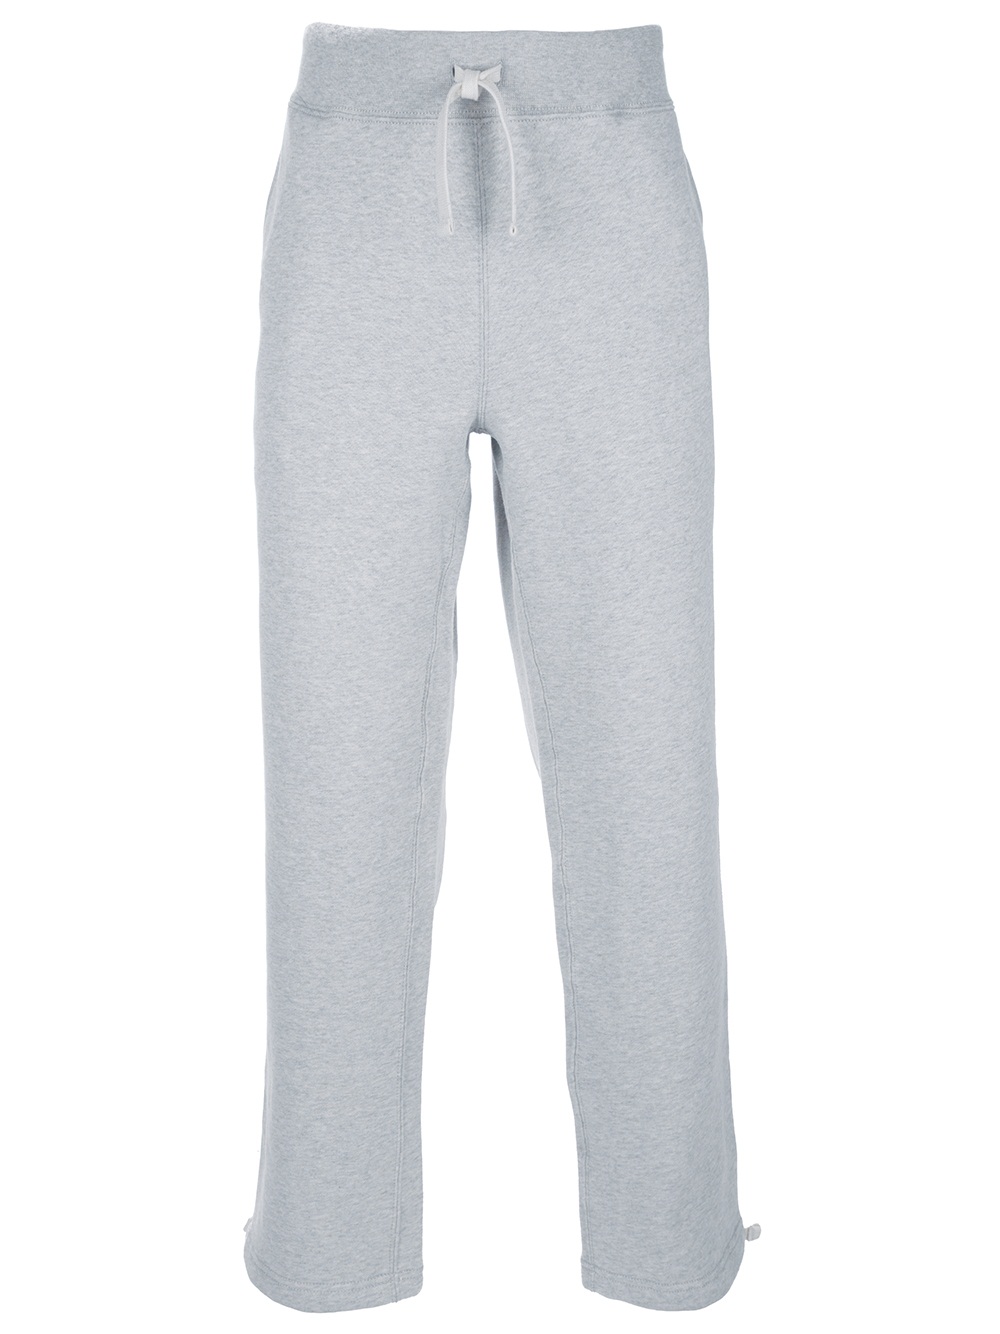 Polo Ralph Lauren Sweat Pants in Grey (Gray) for Men - Lyst